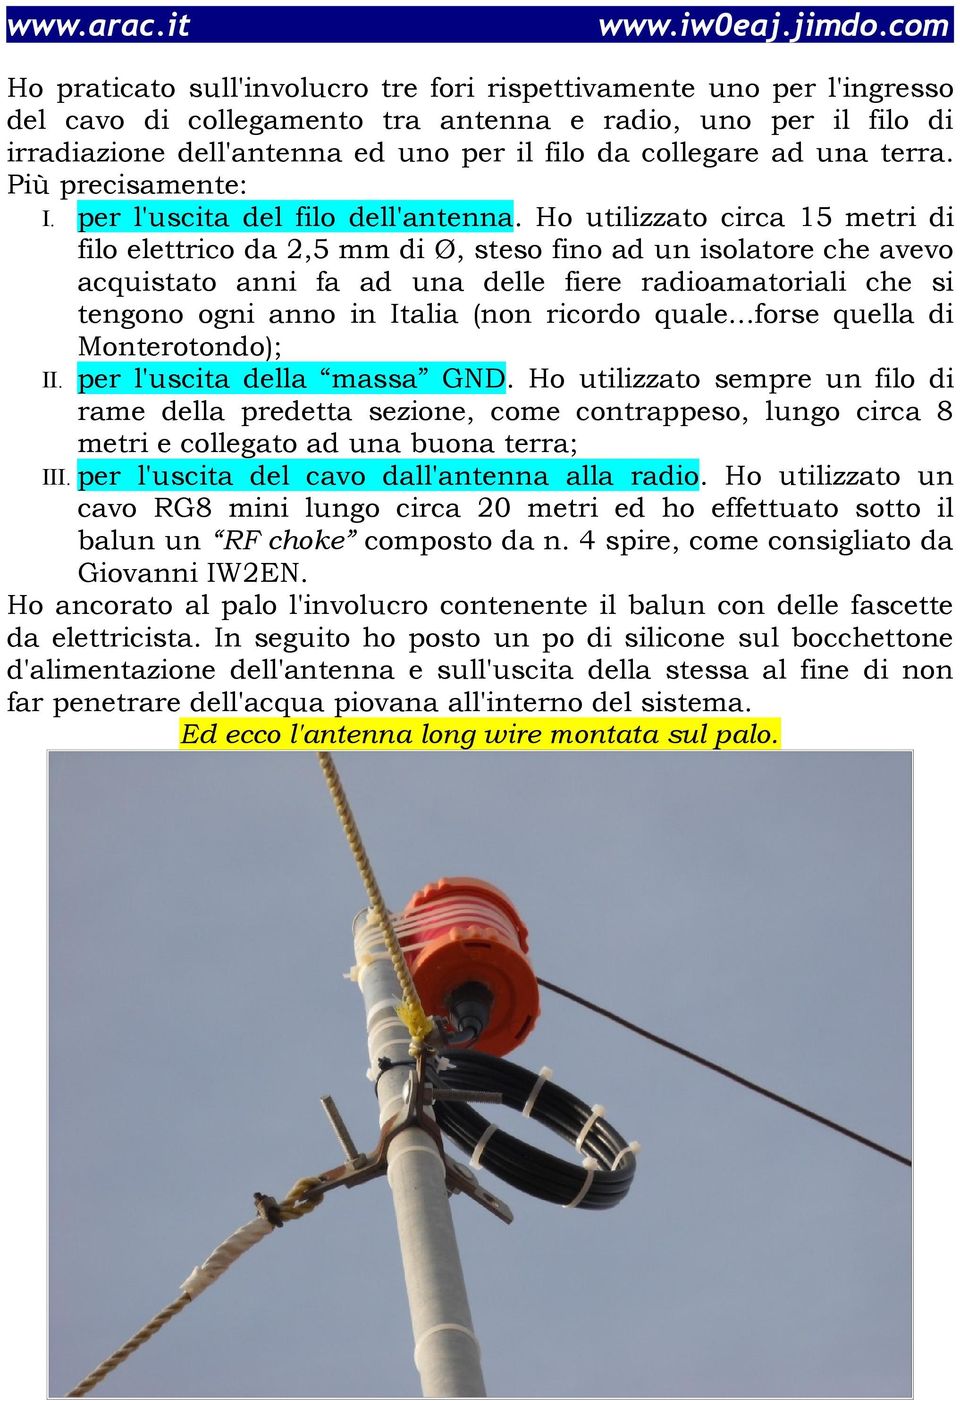 Ho utilizzato circa 15 metri di filo elettrico da 2,5 mm di Ø, steso fino ad un isolatore che avevo acquistato anni fa ad una delle fiere radioamatoriali che si tengono ogni anno in Italia (non